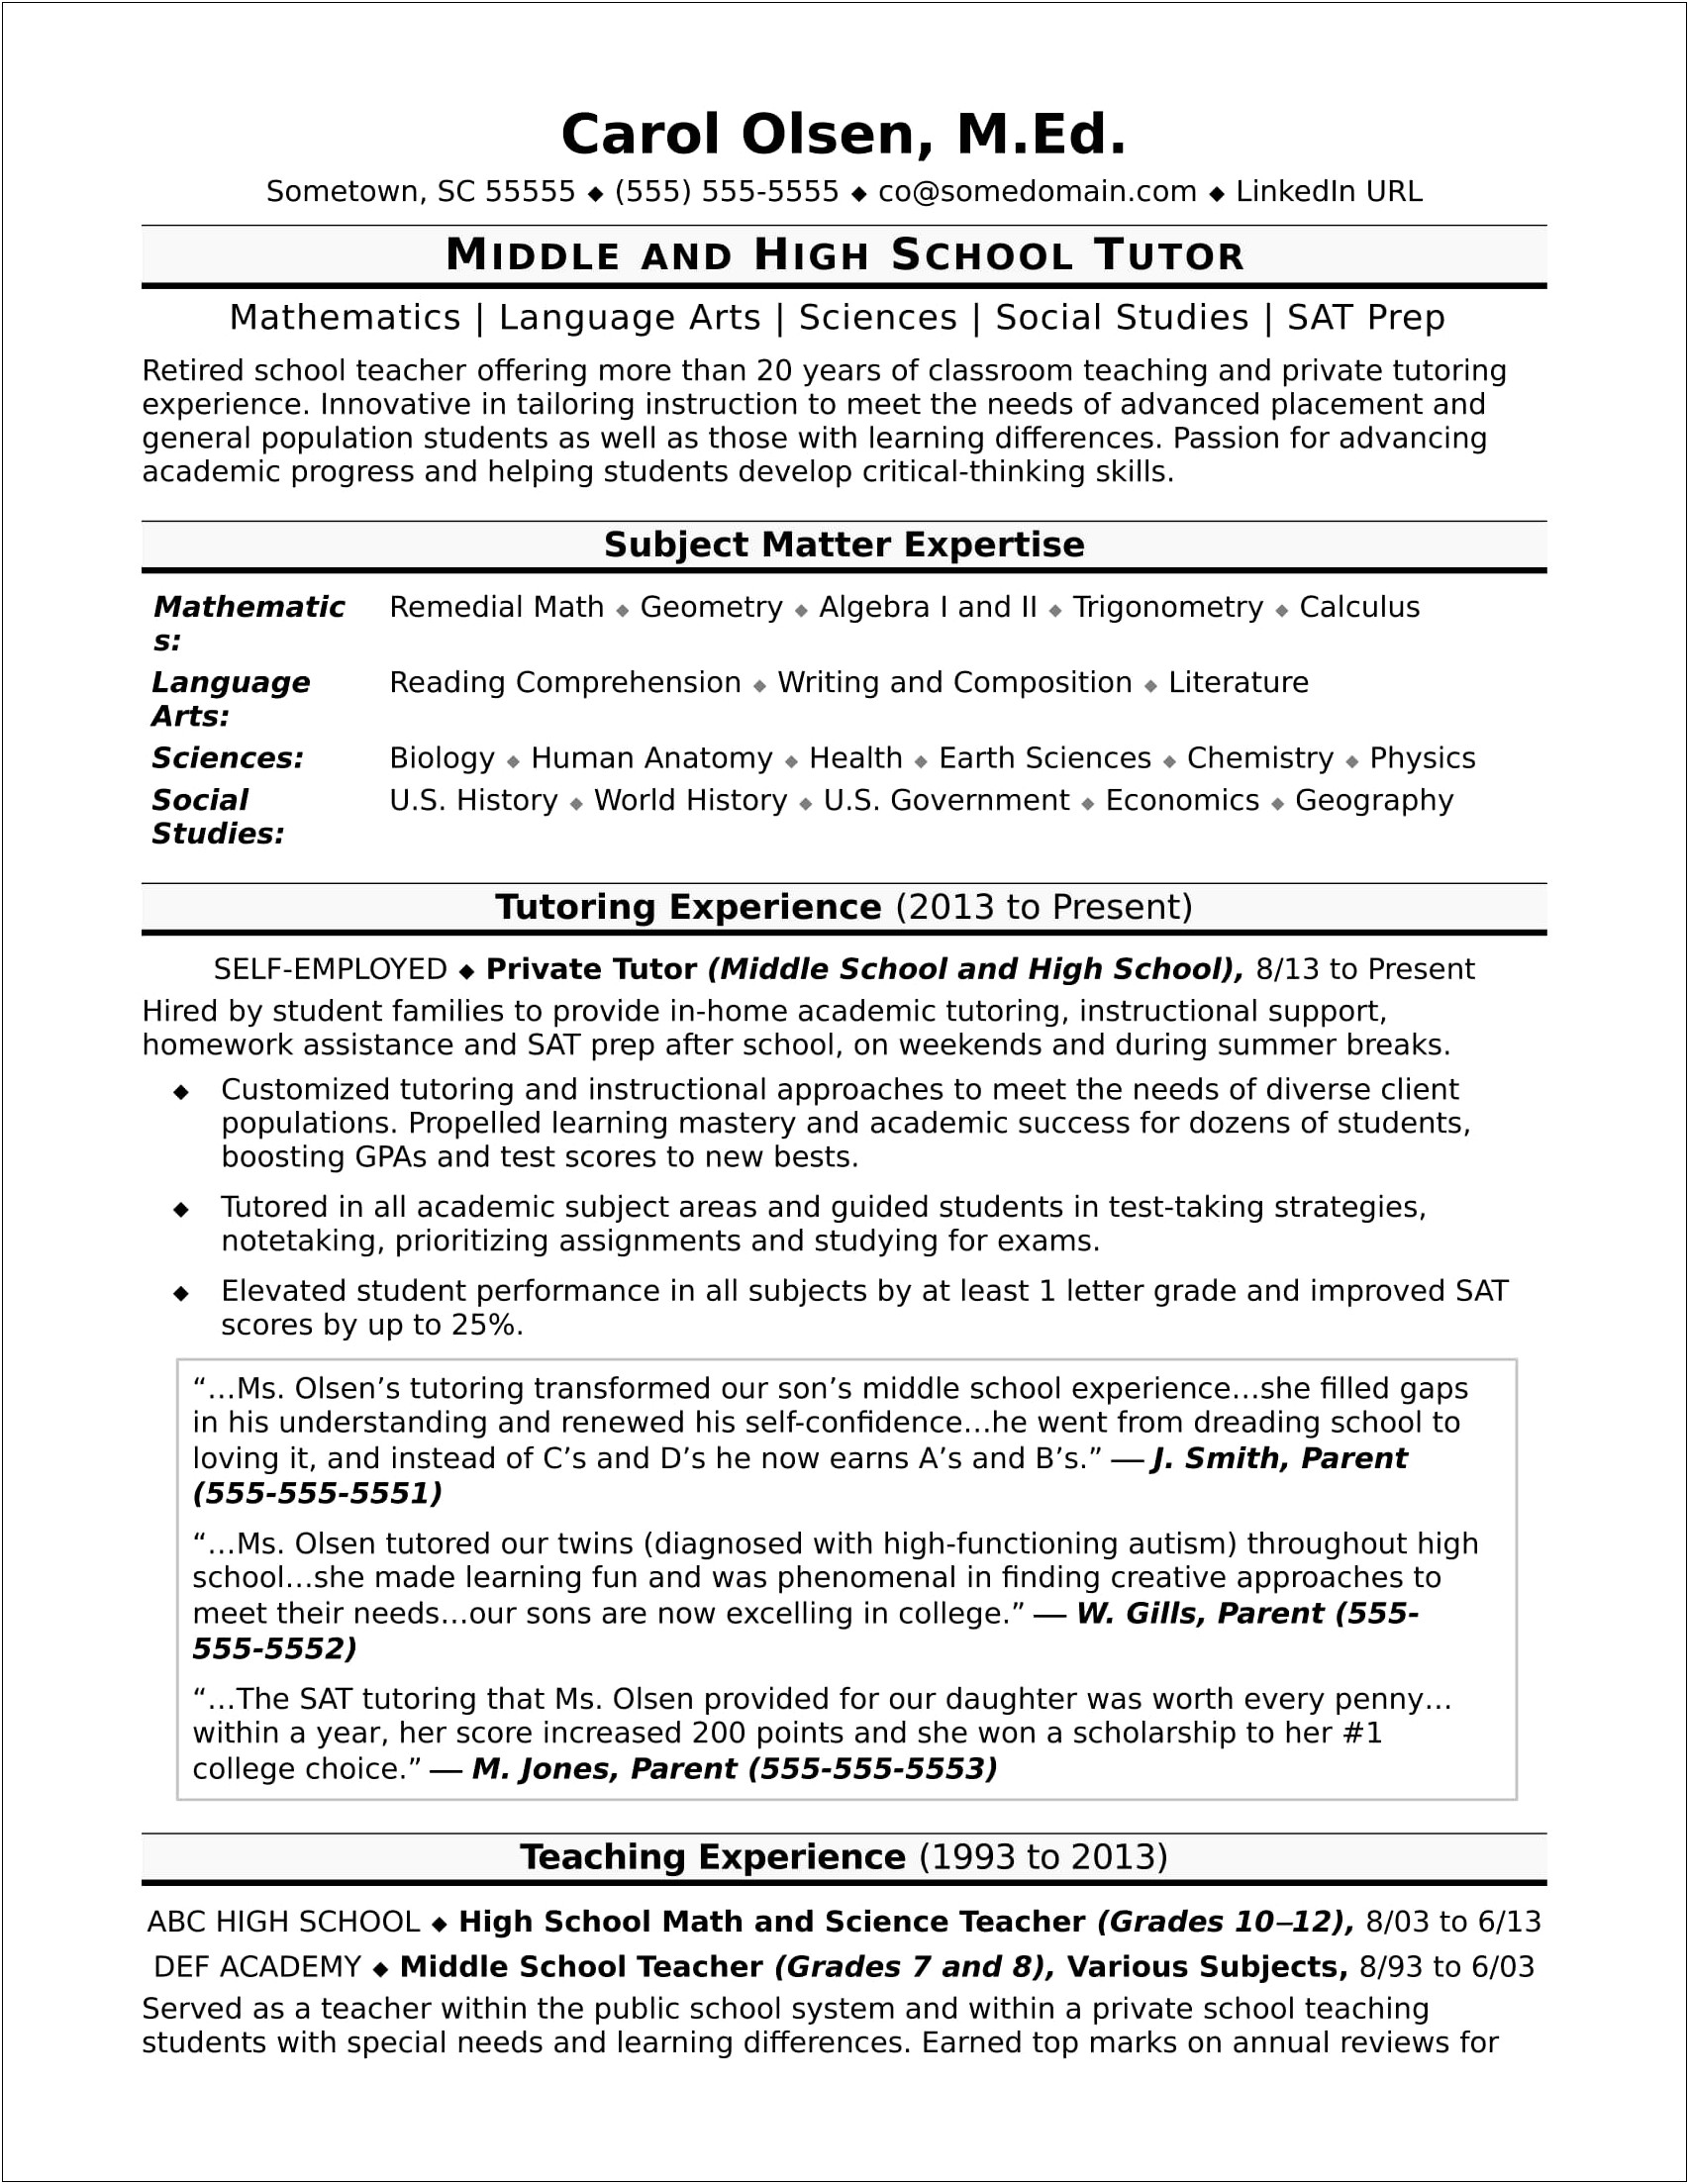 Resume After School Elementary School Job Highschooler